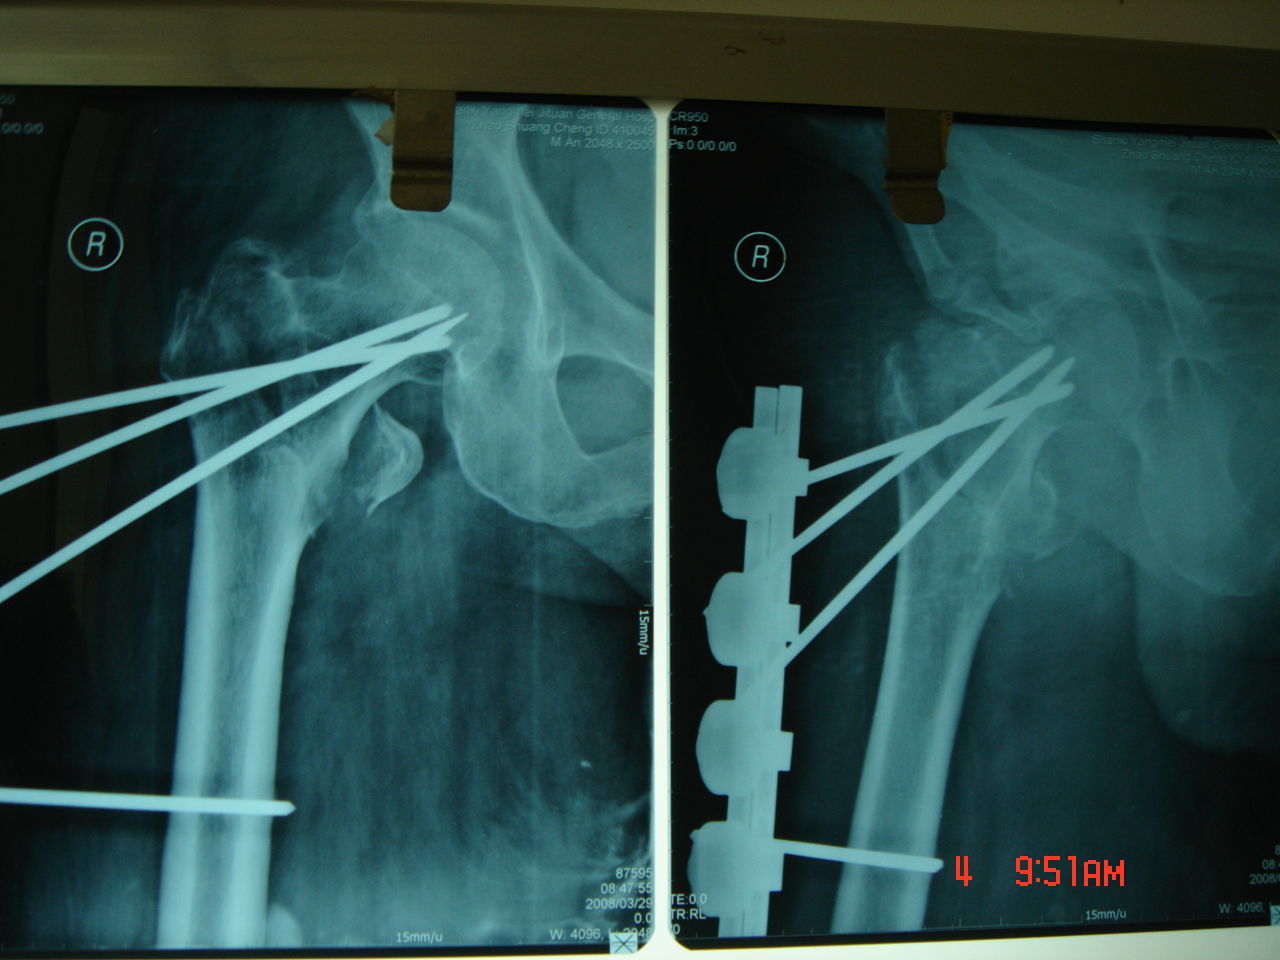 股骨粗隆间骨折的手术治疗_股骨骨折_手术_治疗方式 - 好大夫在线